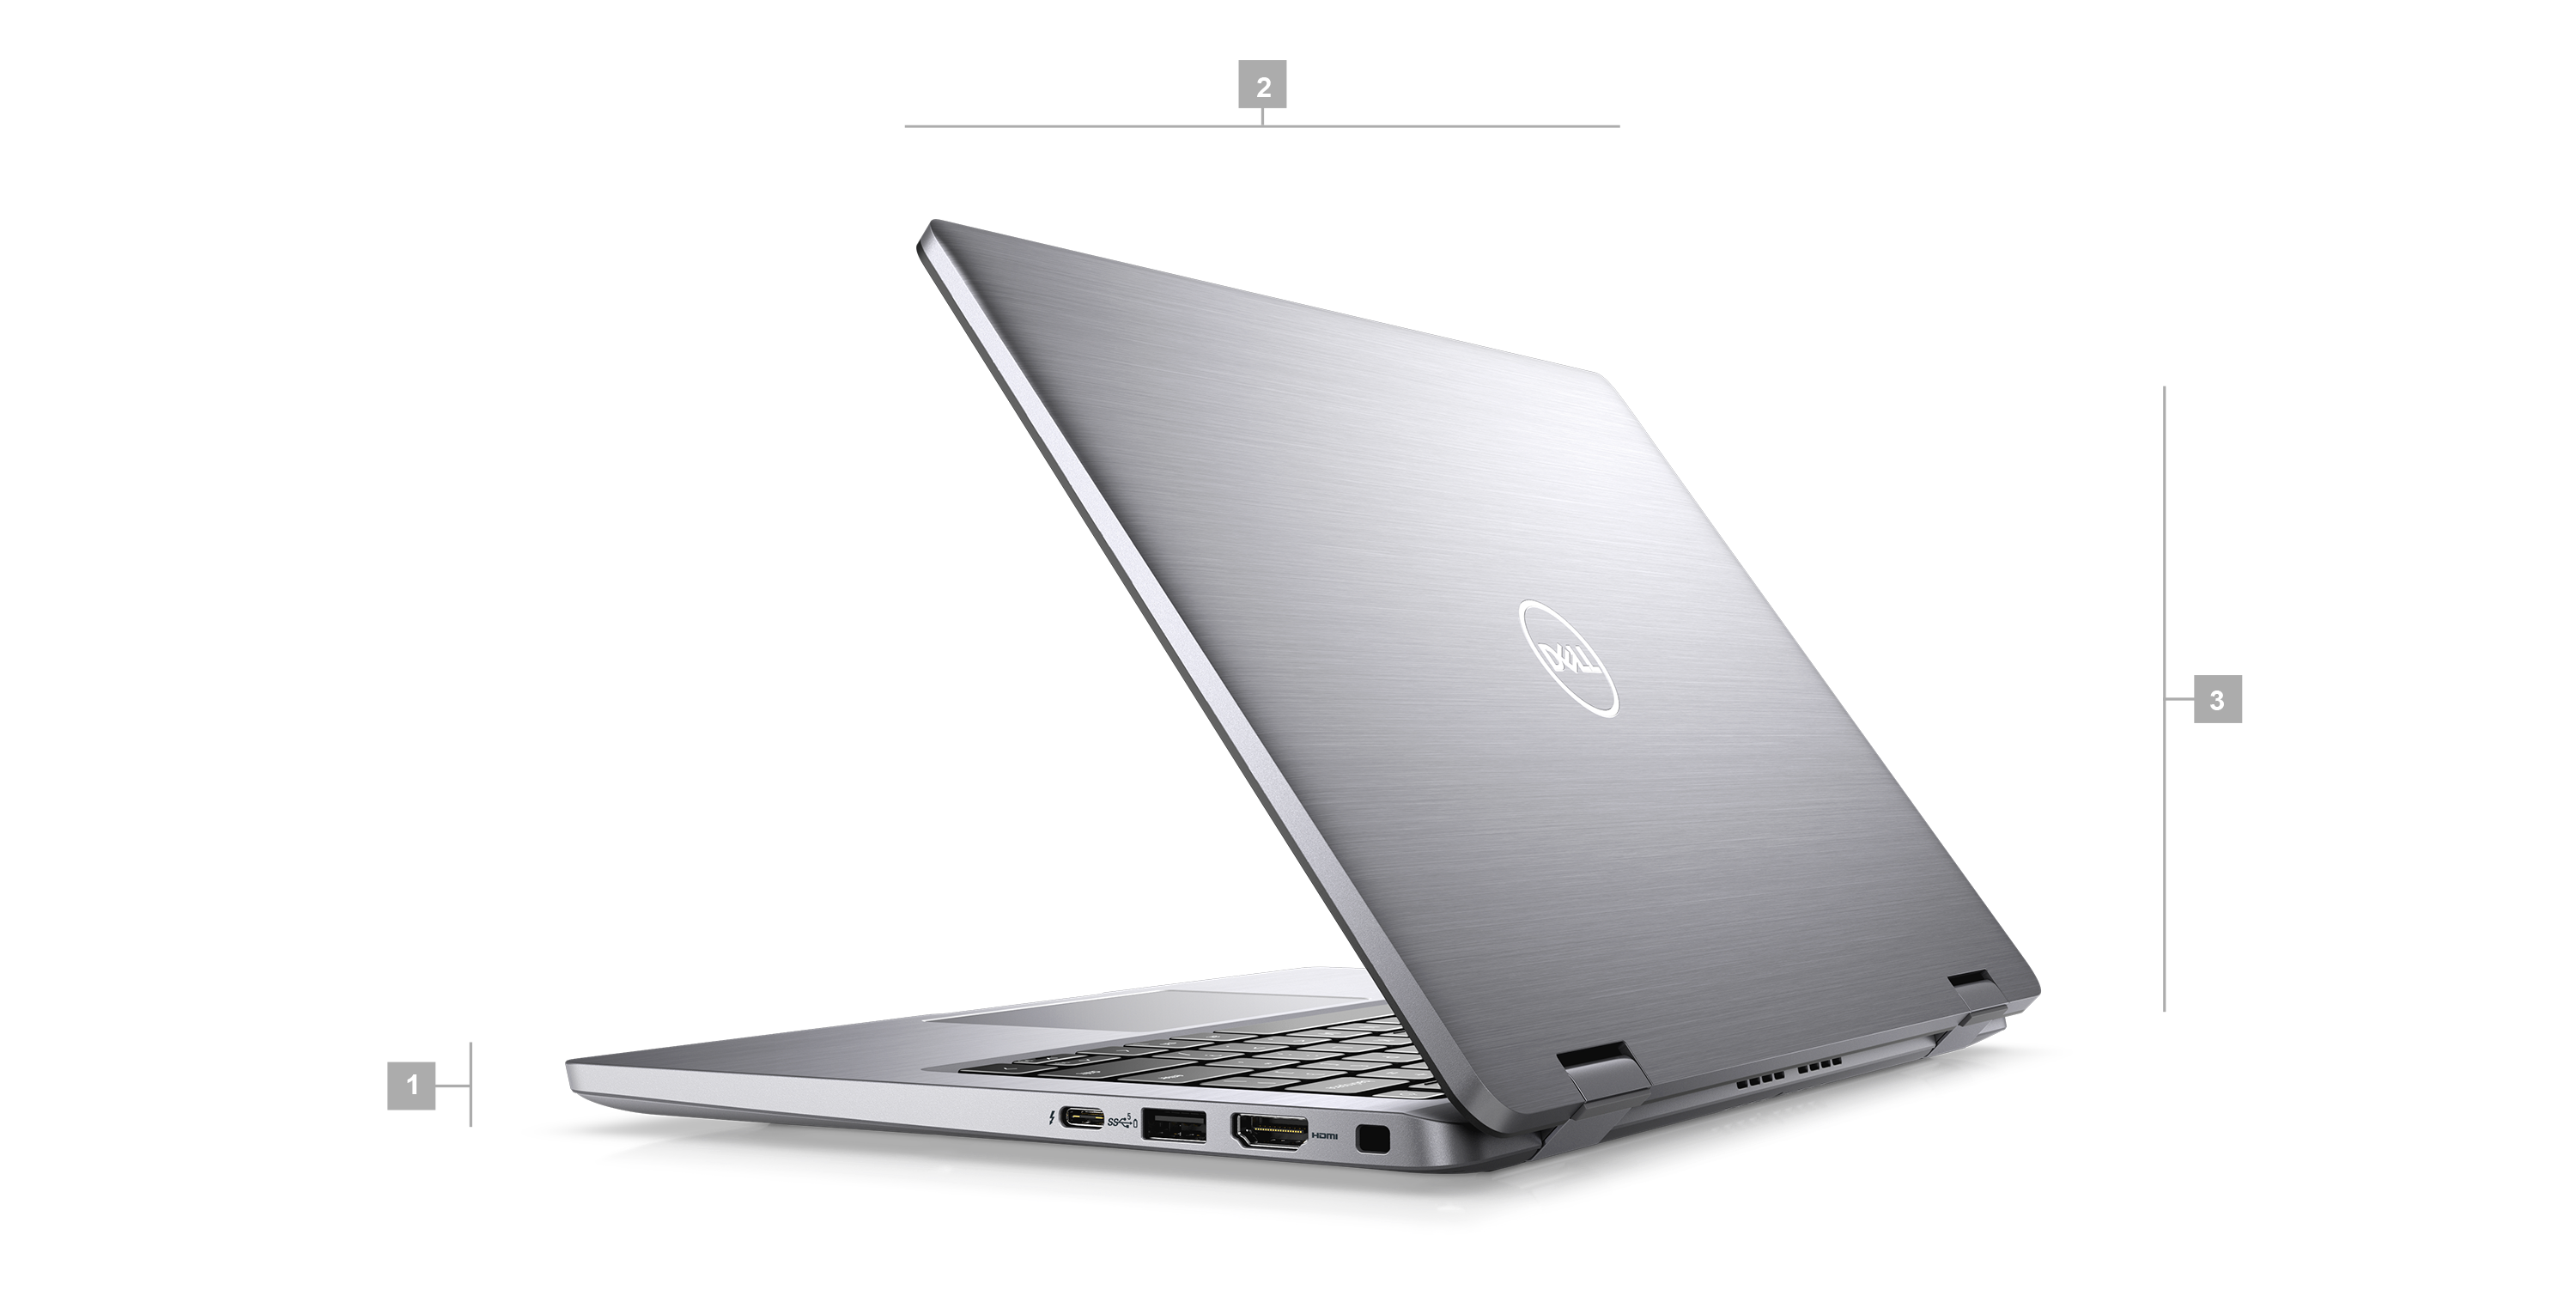 Kép egy Dell Latitude 7330, 13 hüvelykes, 2 az 1-ben laptopról, amelynek a hátulja látszik, és amelyen 1-től 3-ig terjedő számok jelzik a termék méreteit és tömegét.